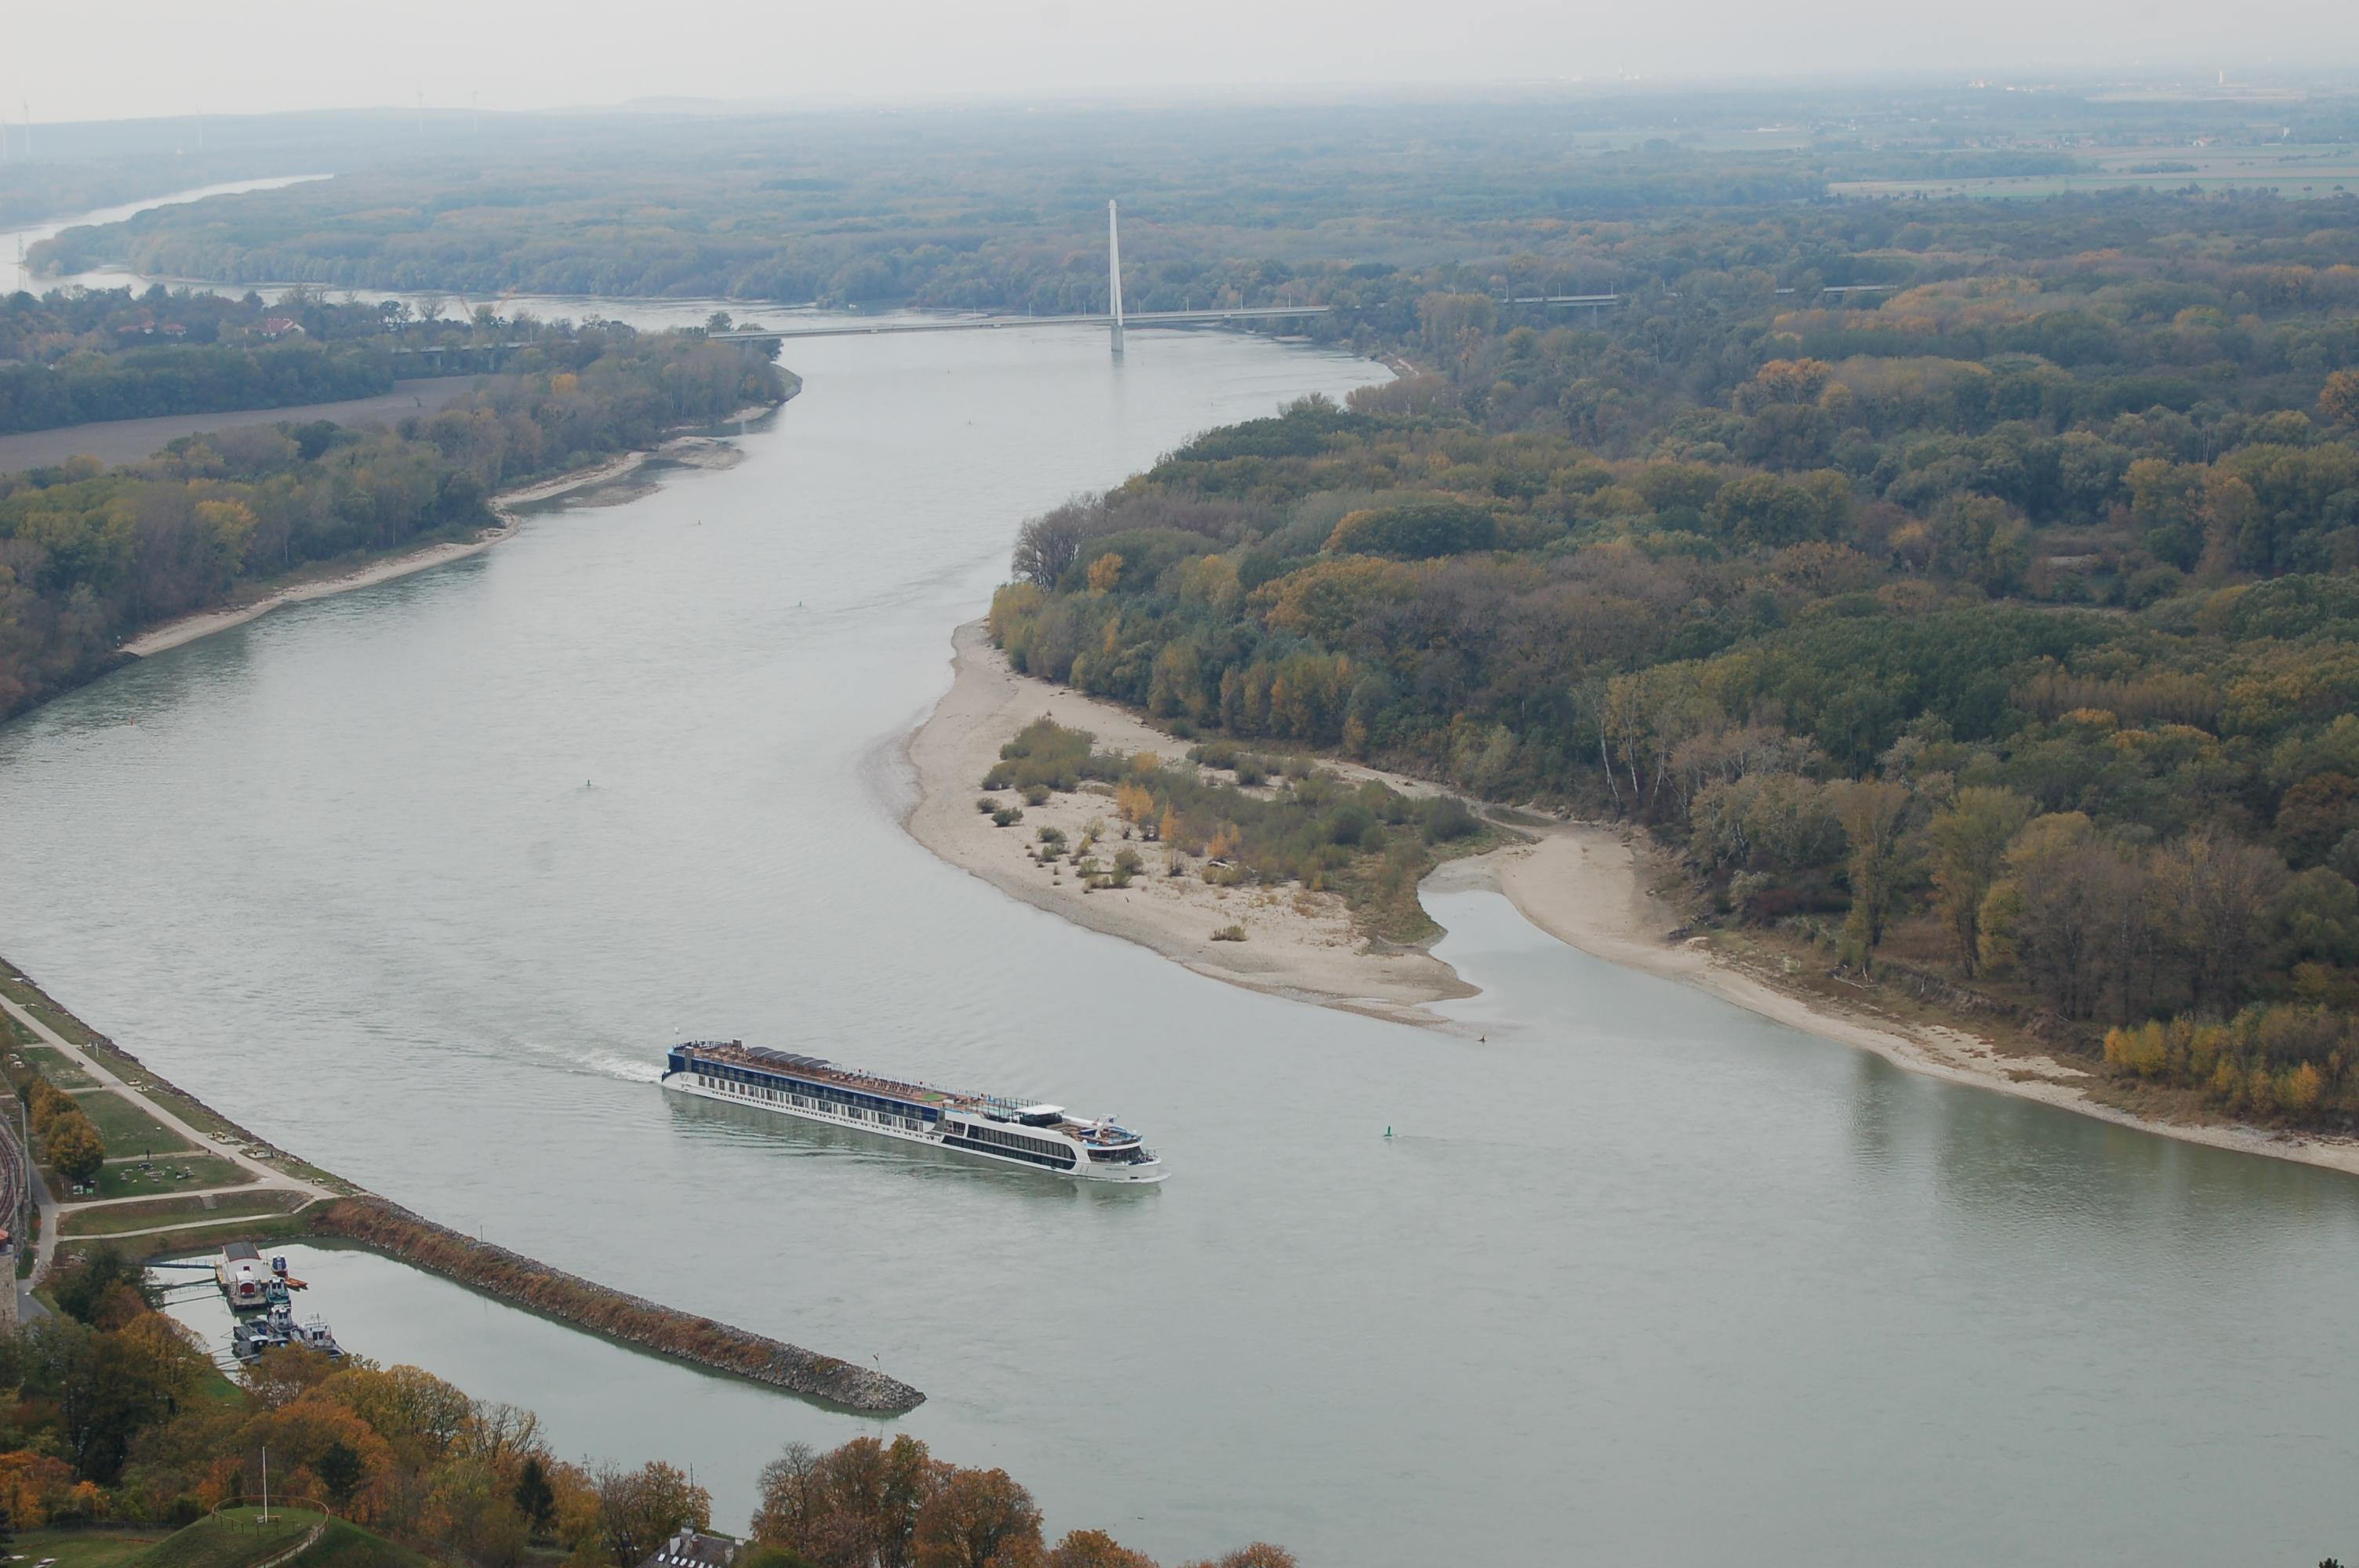  An der Donau bei Hainburg lässt sich die Ablagerung von Sedimenten sehr gut erkennen.